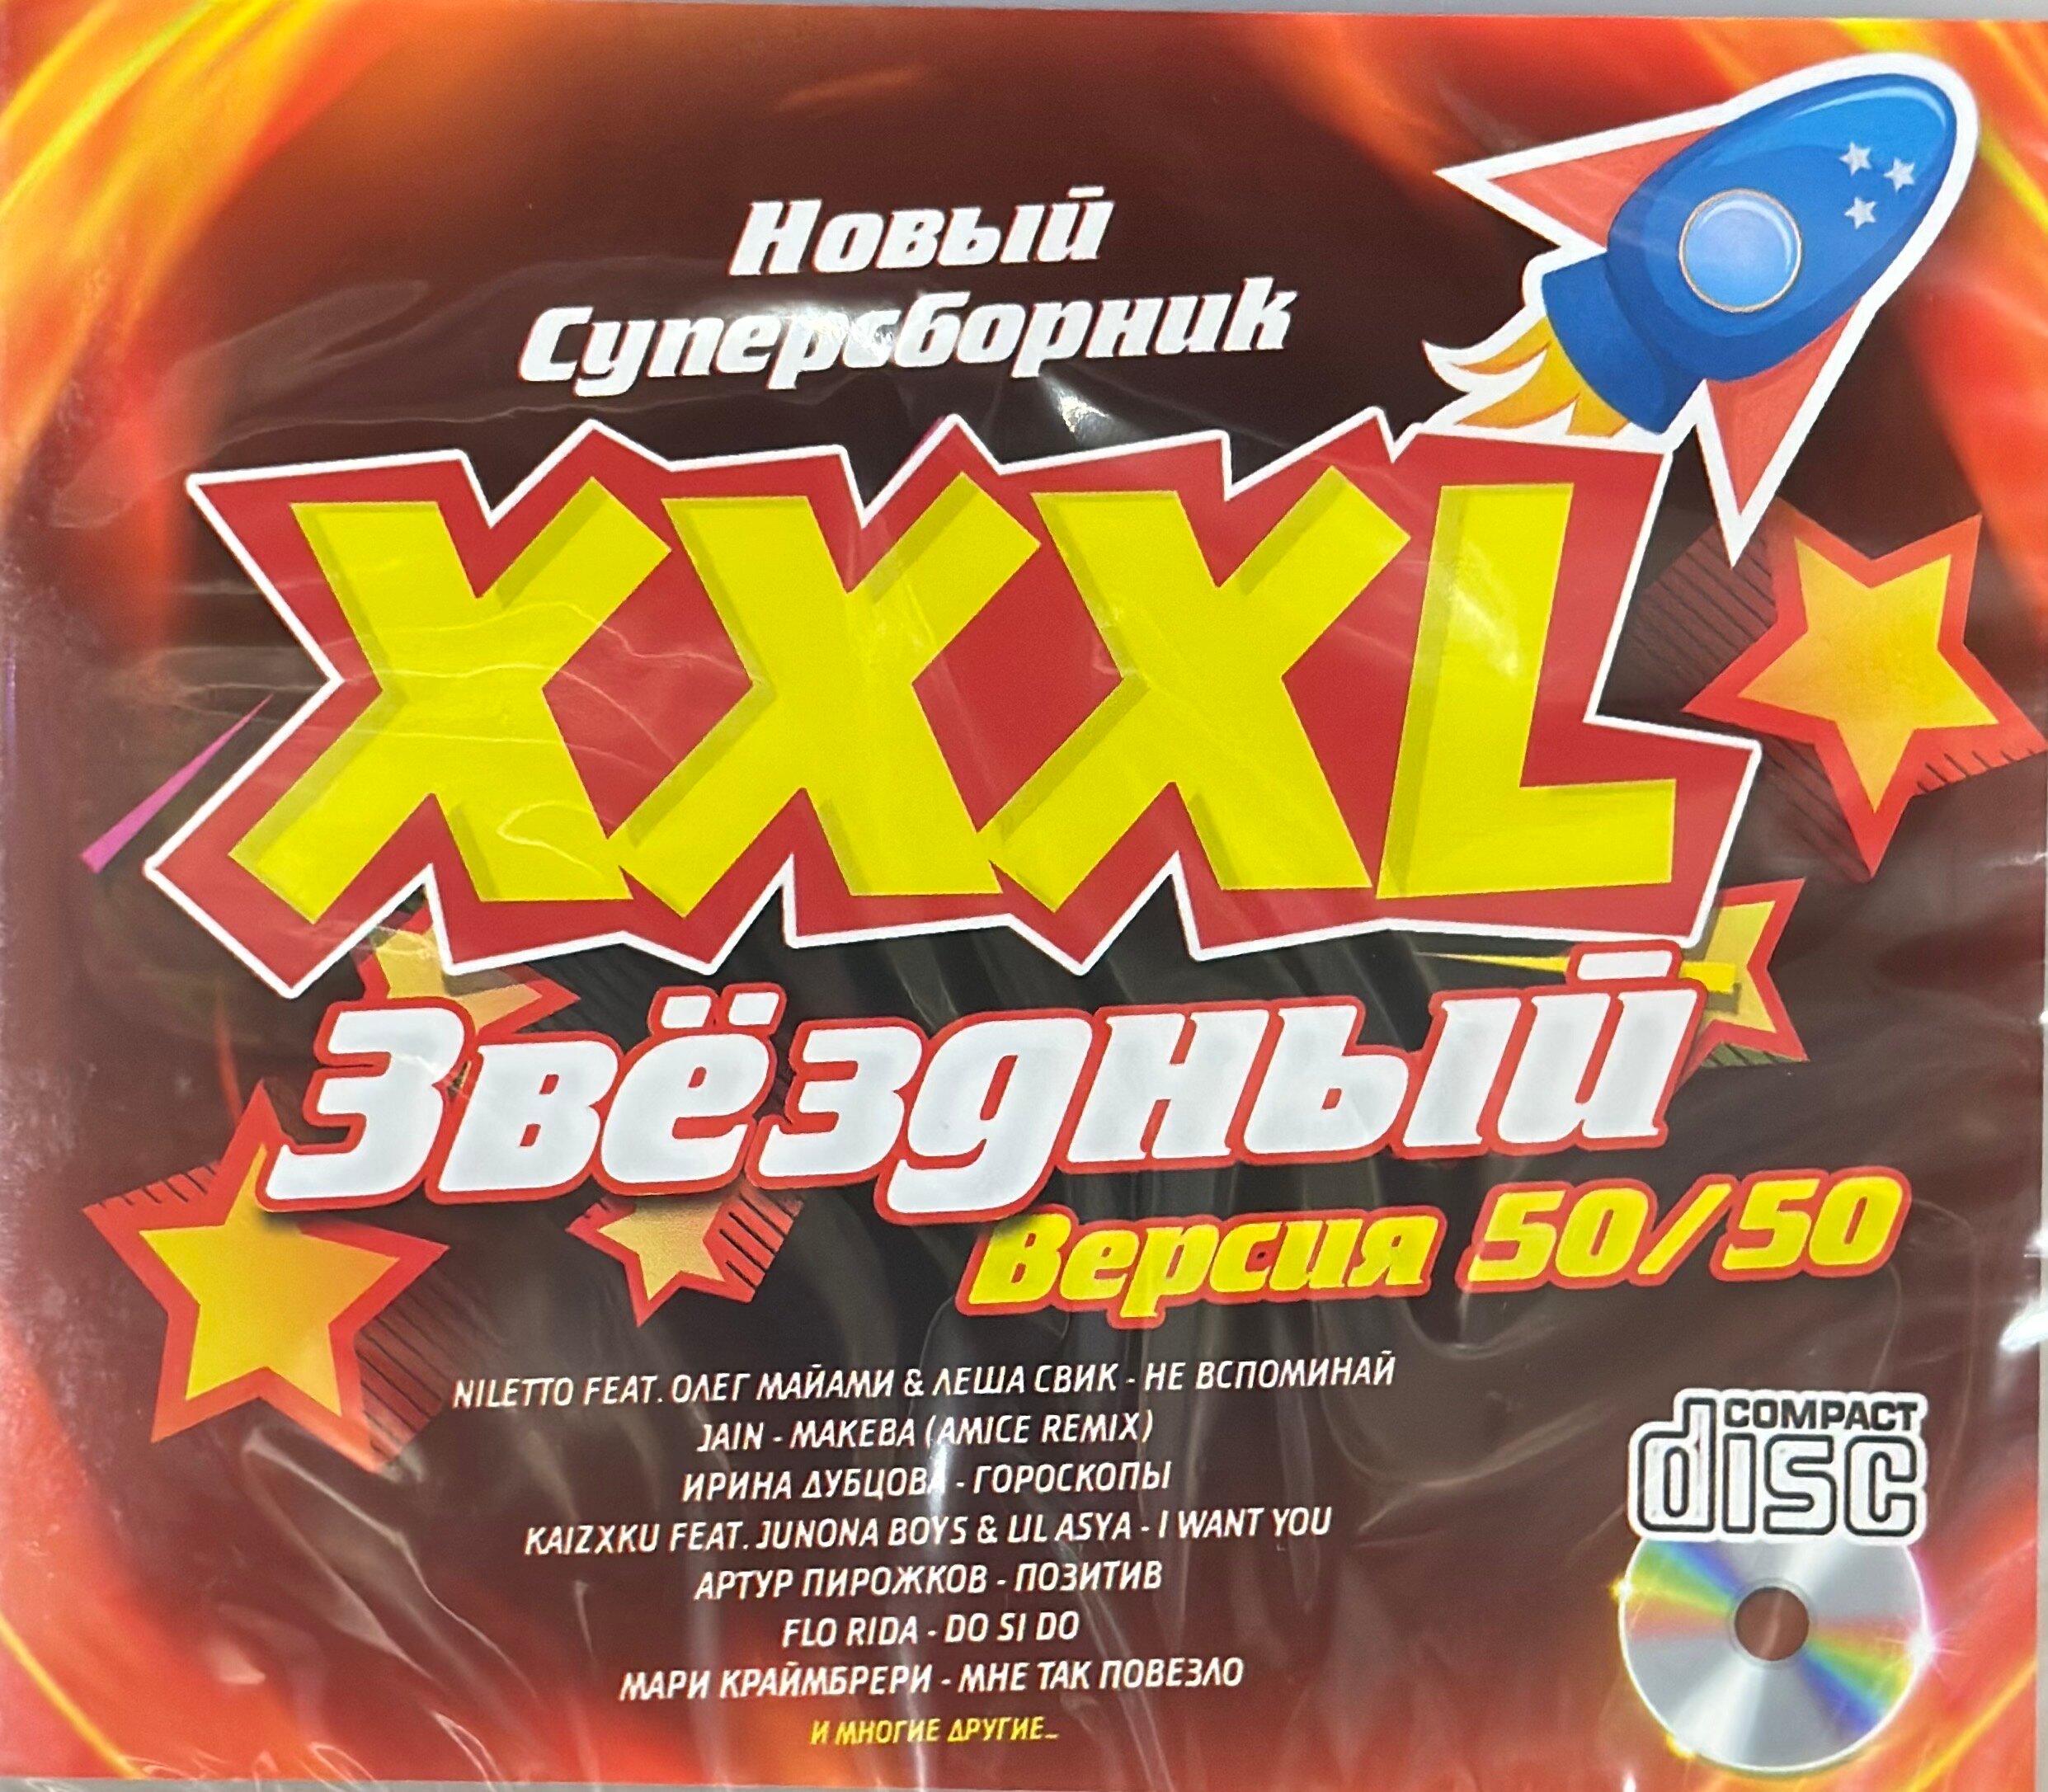 Диск с музыкой CD формата XXXL звездный Новый суперсборник 50/50 Всего 24 песни